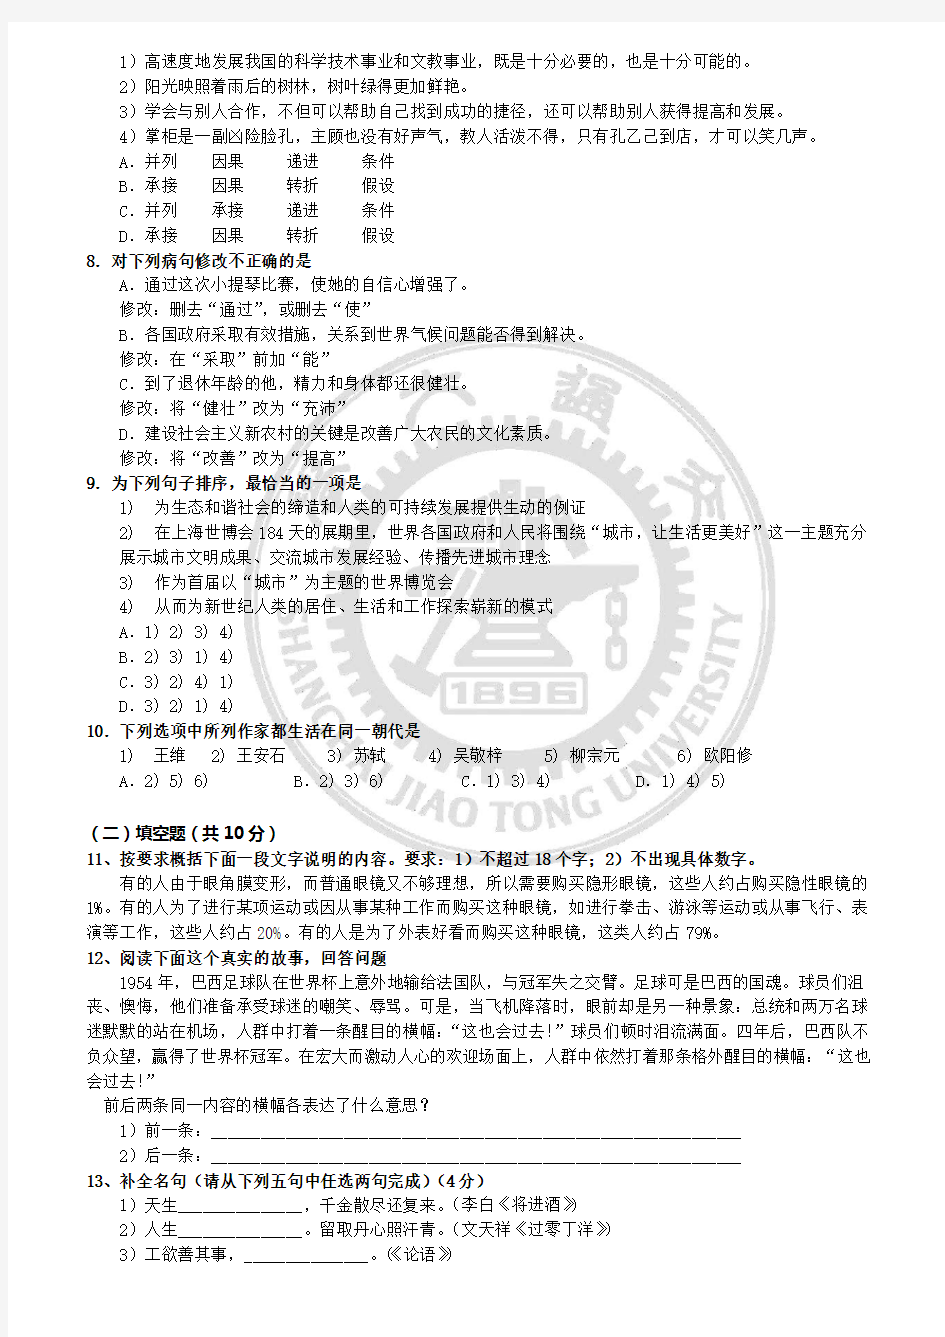 上海交通大学留学生本科入学考试语文1